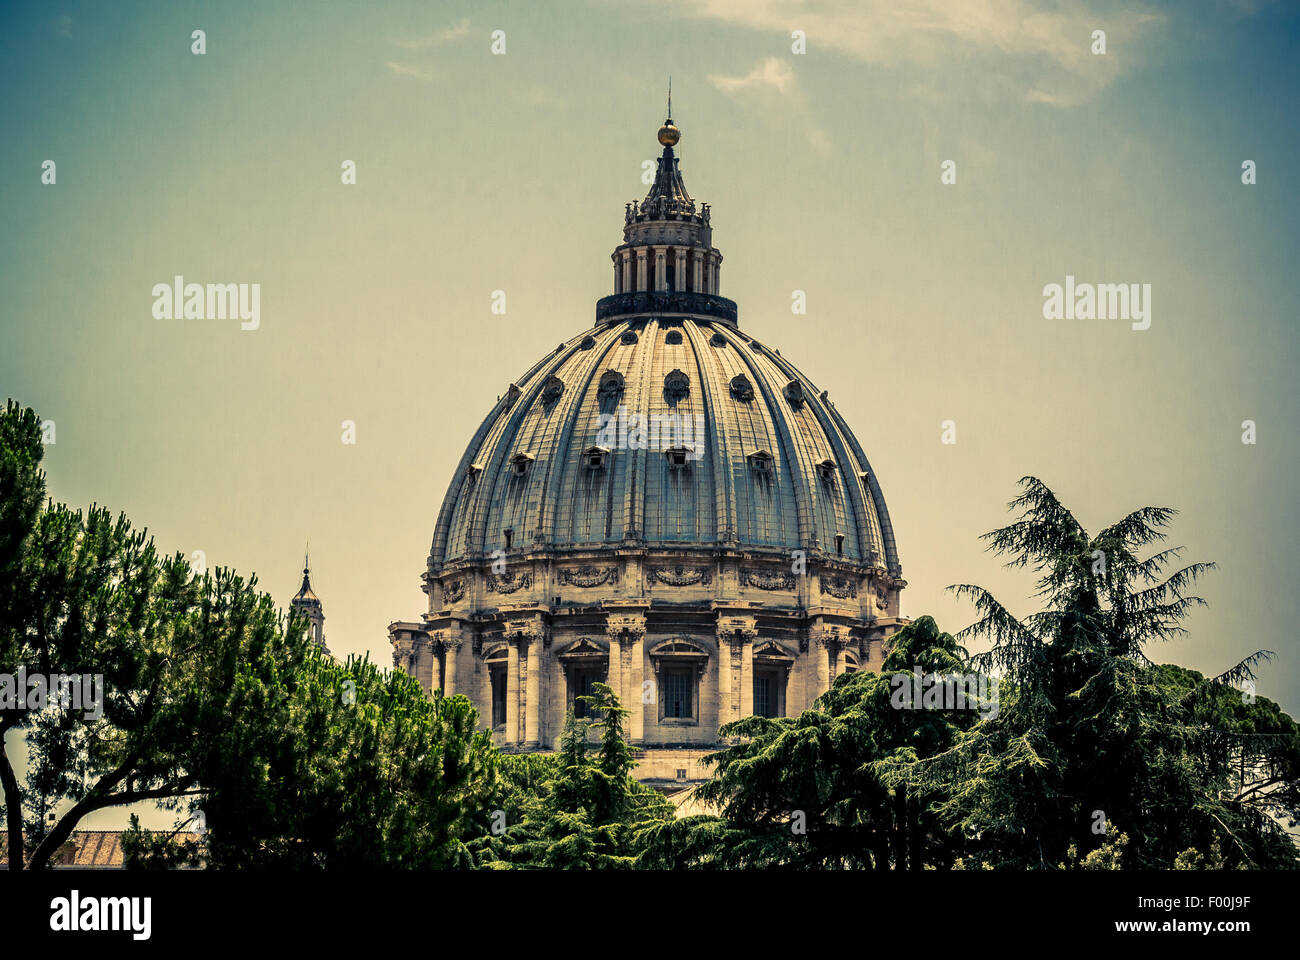 Le dôme de la Basilique St Pierre shot du Vatican. Rome. L'Italie. Banque D'Images